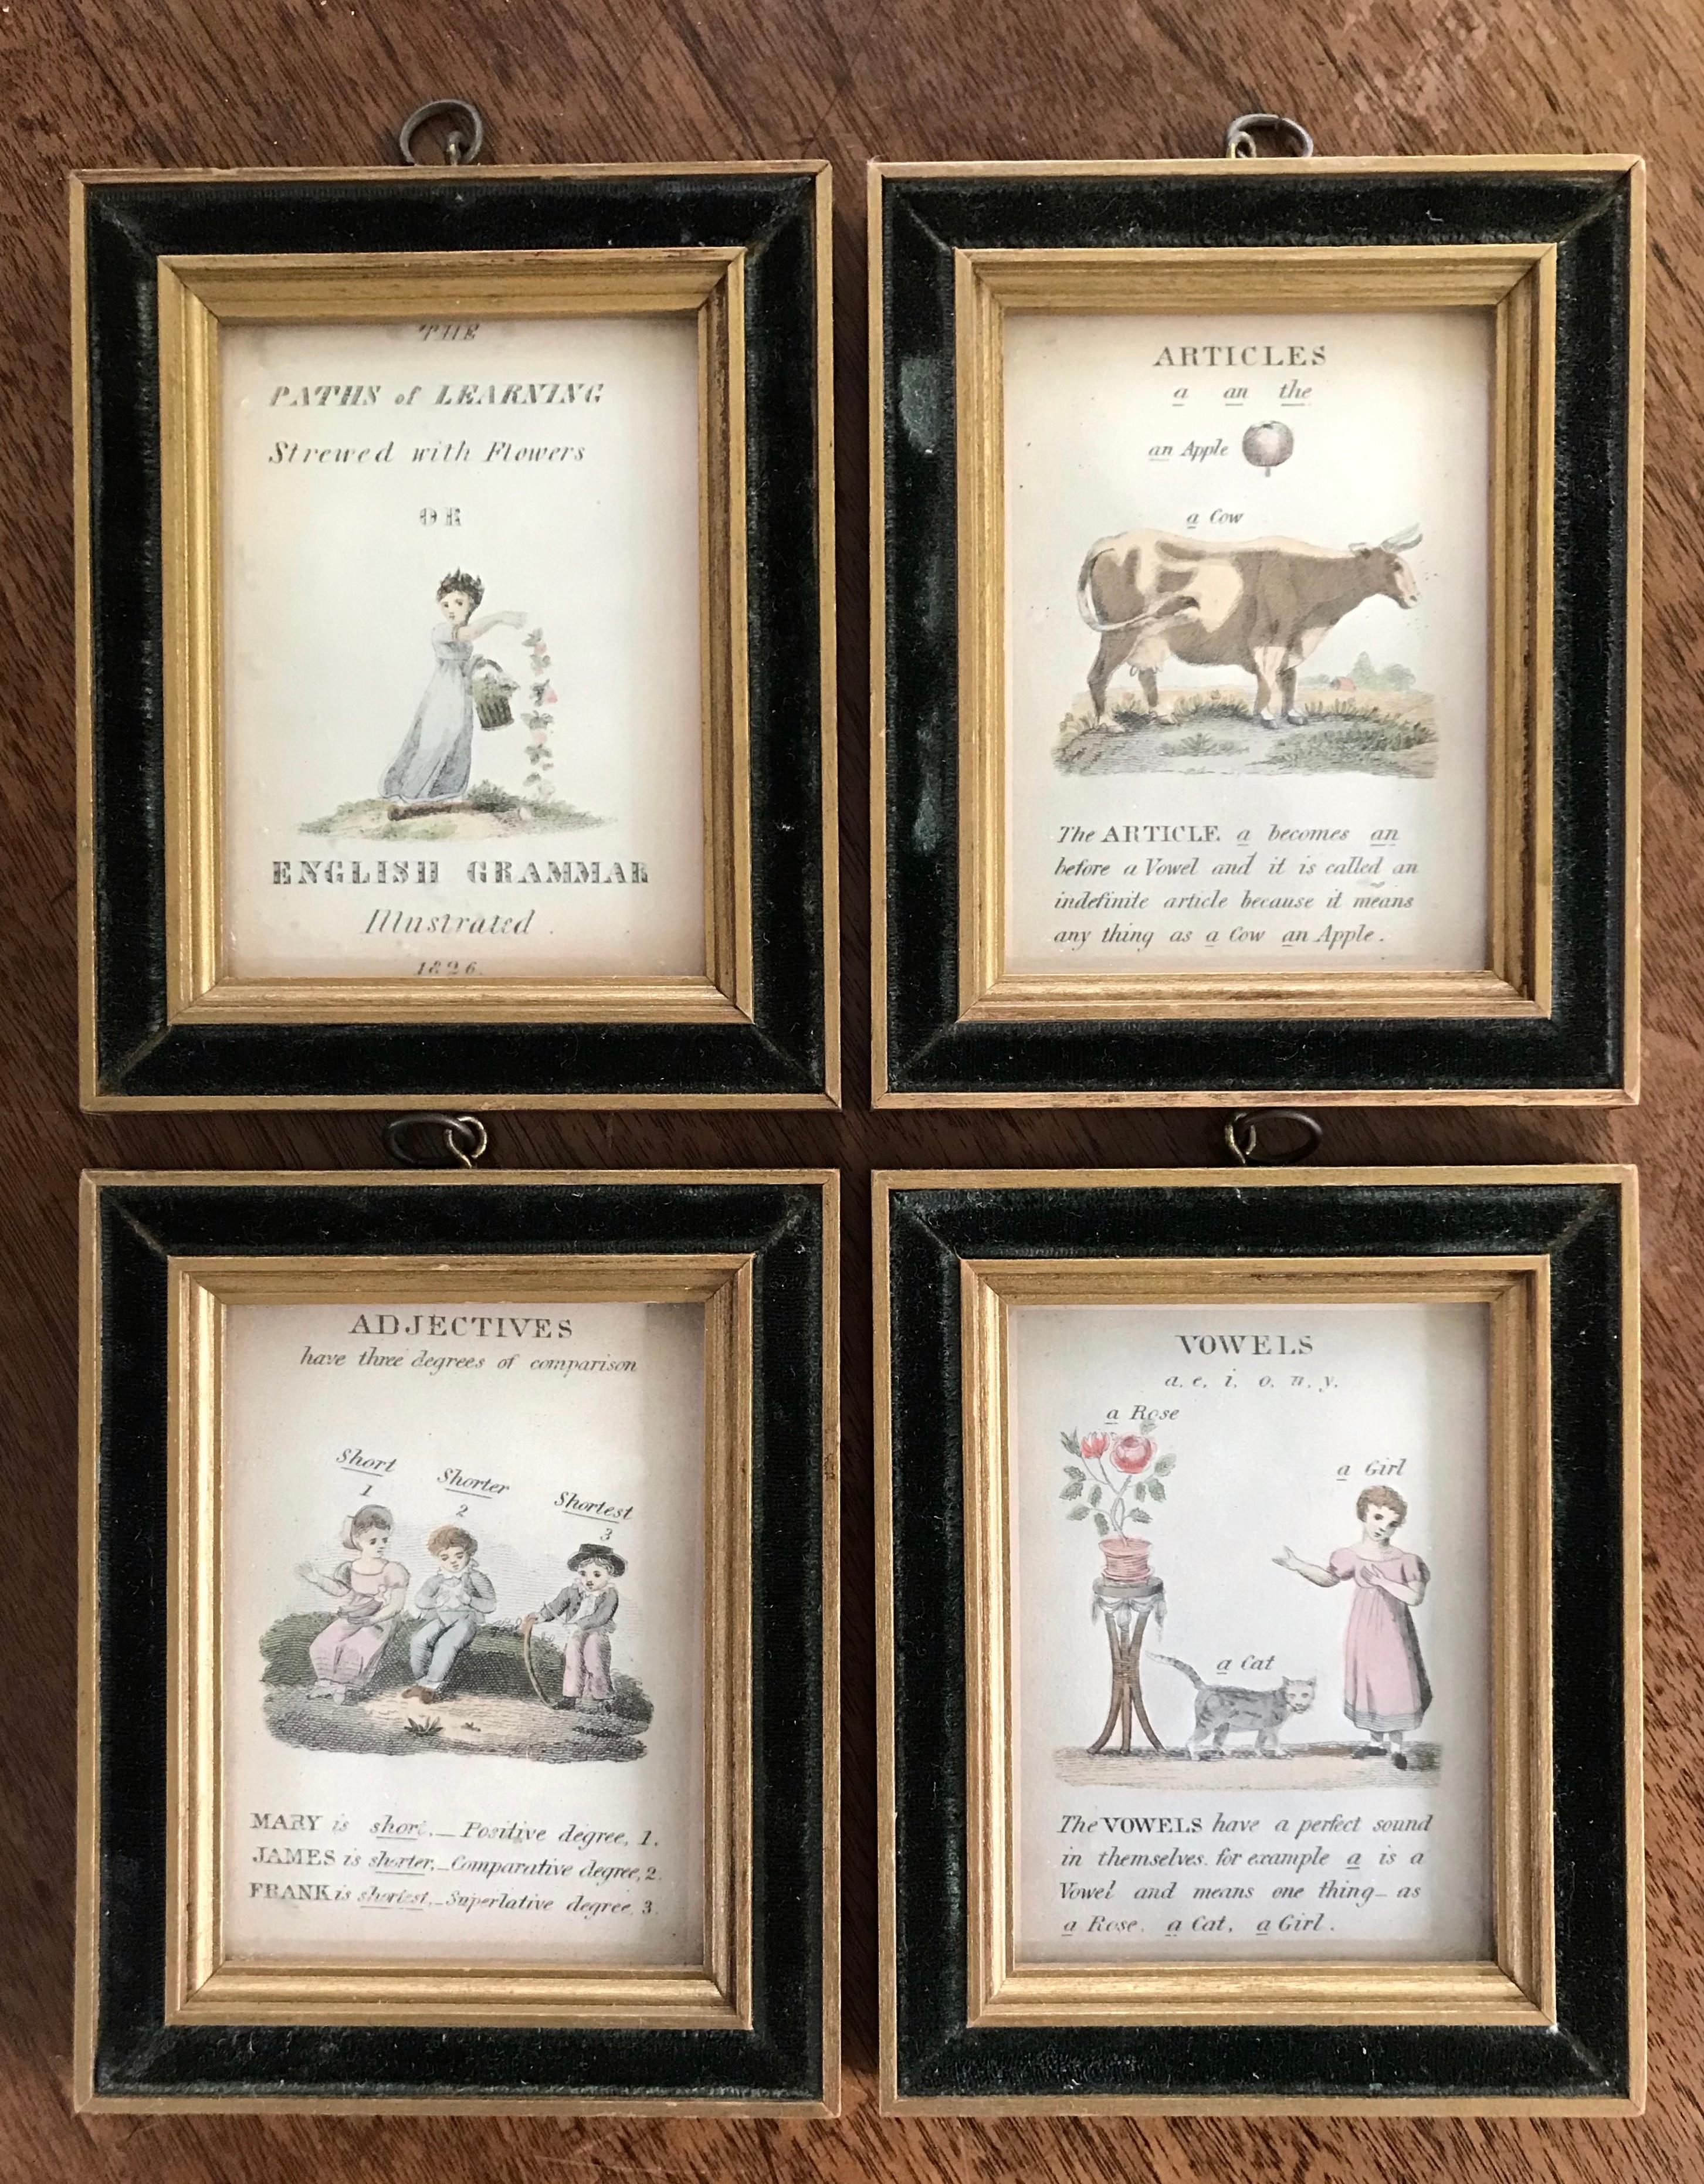 19th Century English Grammar Framed Illustrations